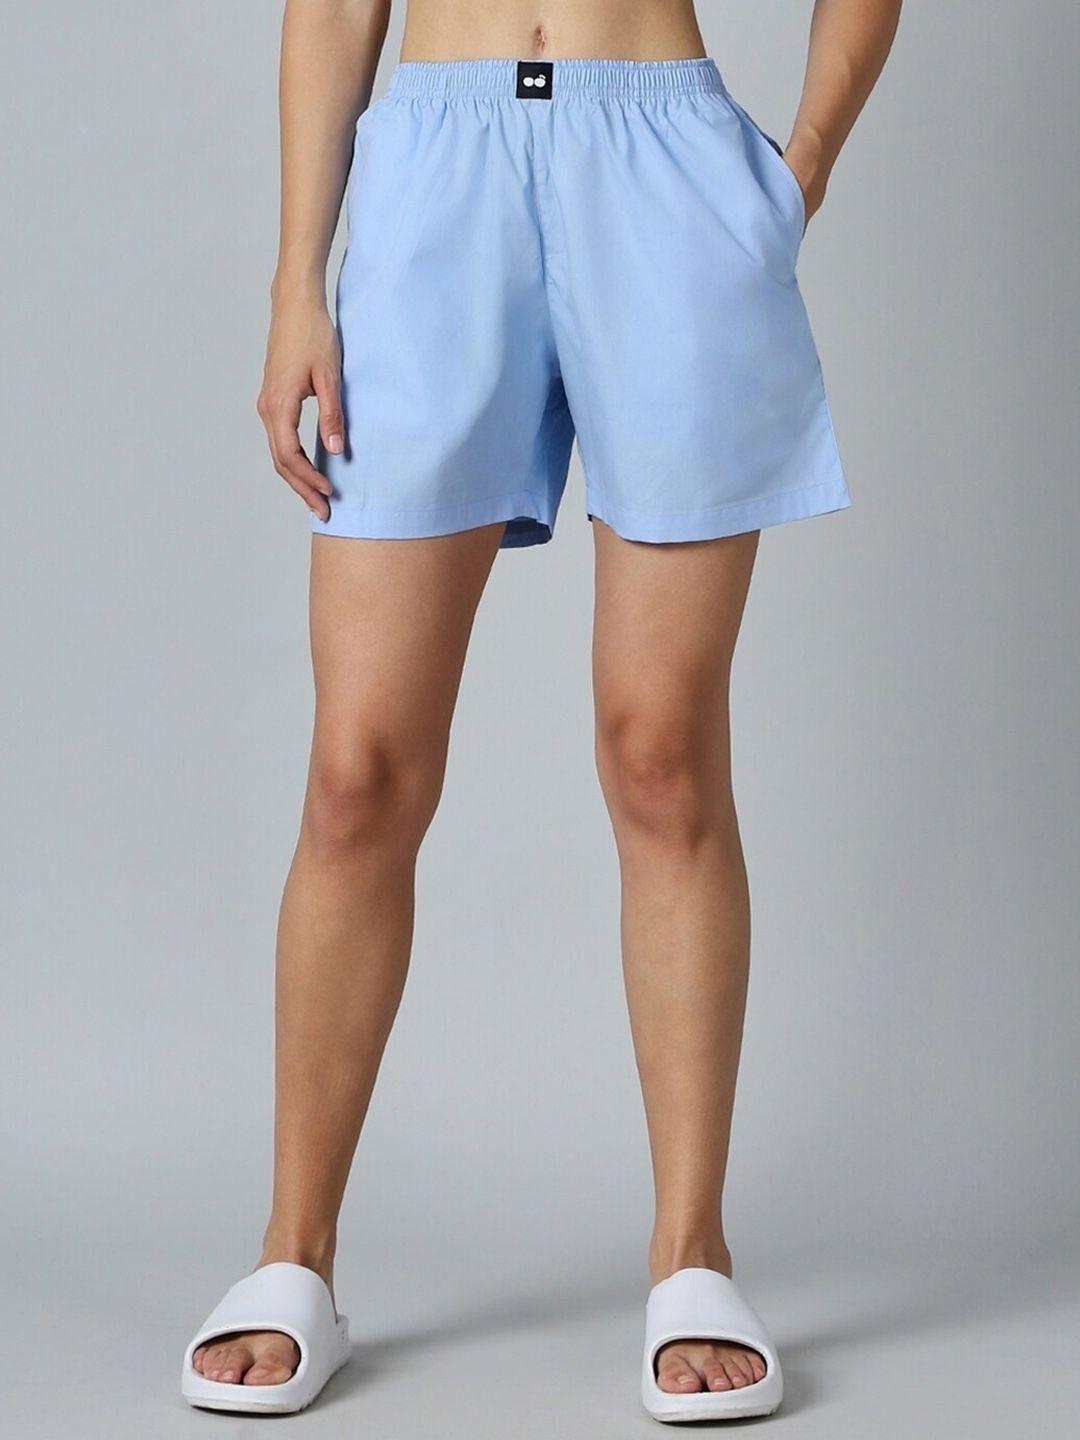 bewakoof women blue mid-rise cotton regular shorts